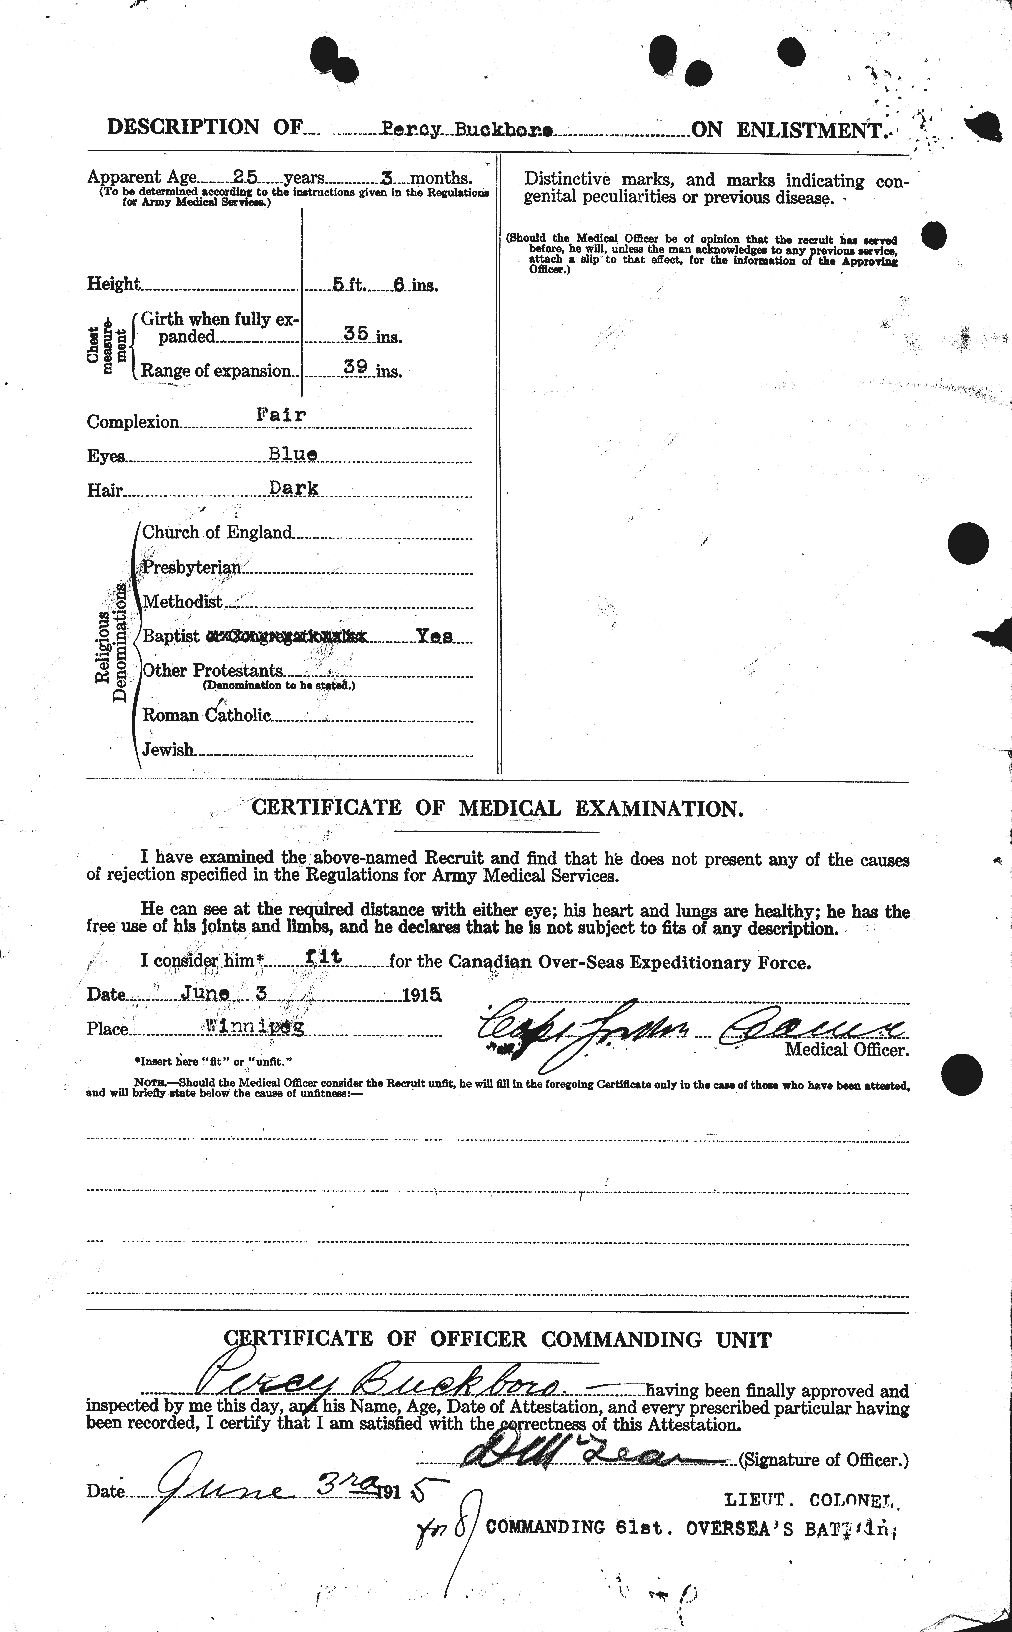 Dossiers du Personnel de la Première Guerre mondiale - CEC 269383b